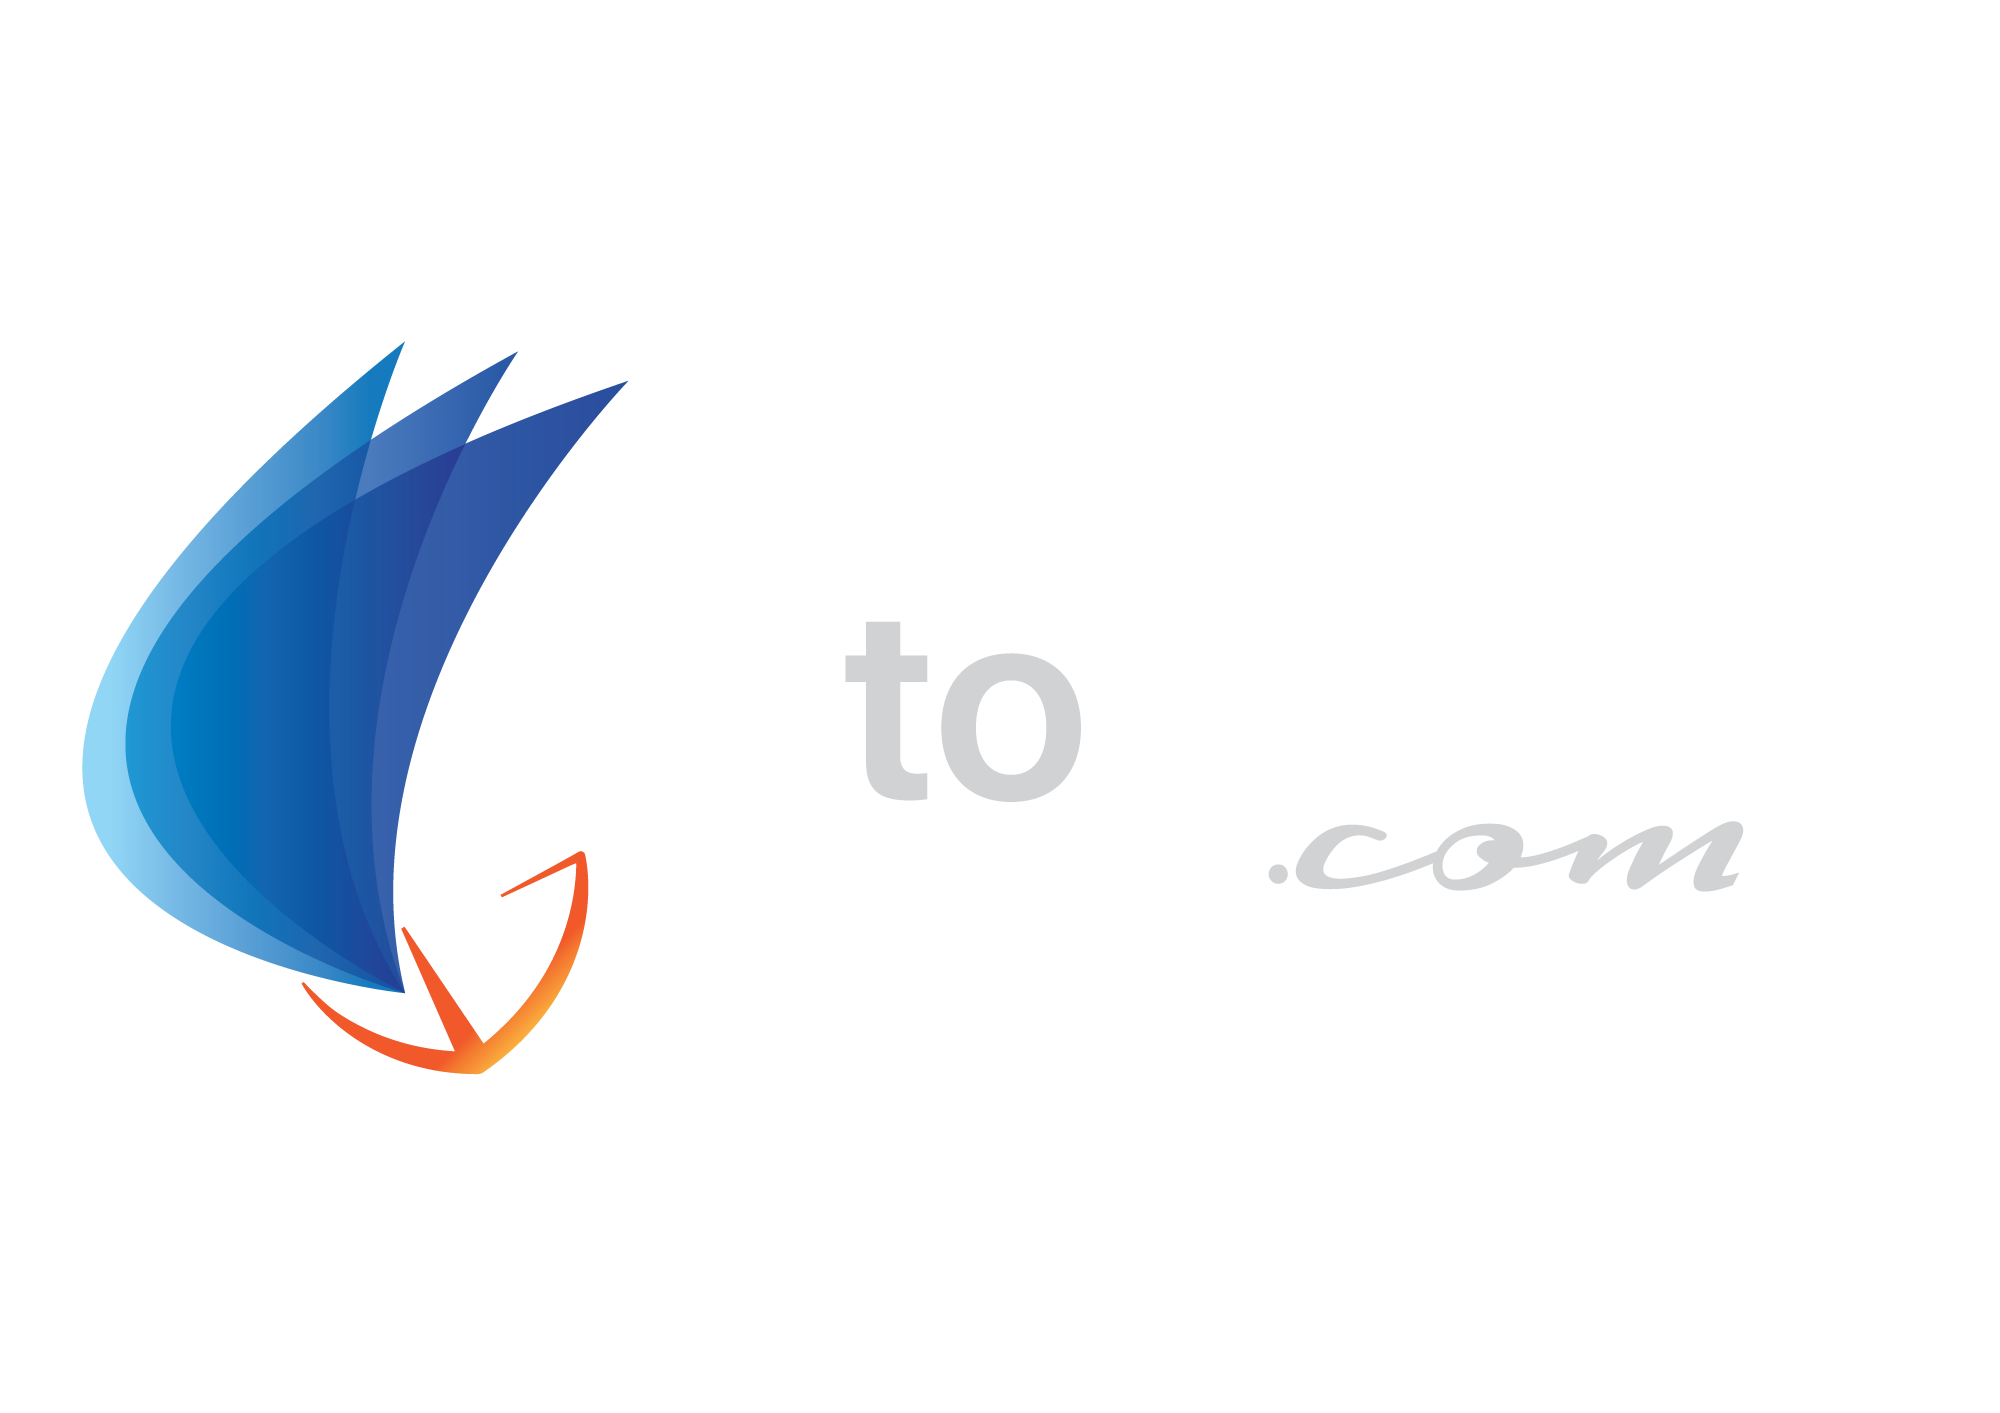 GotoSailing.com